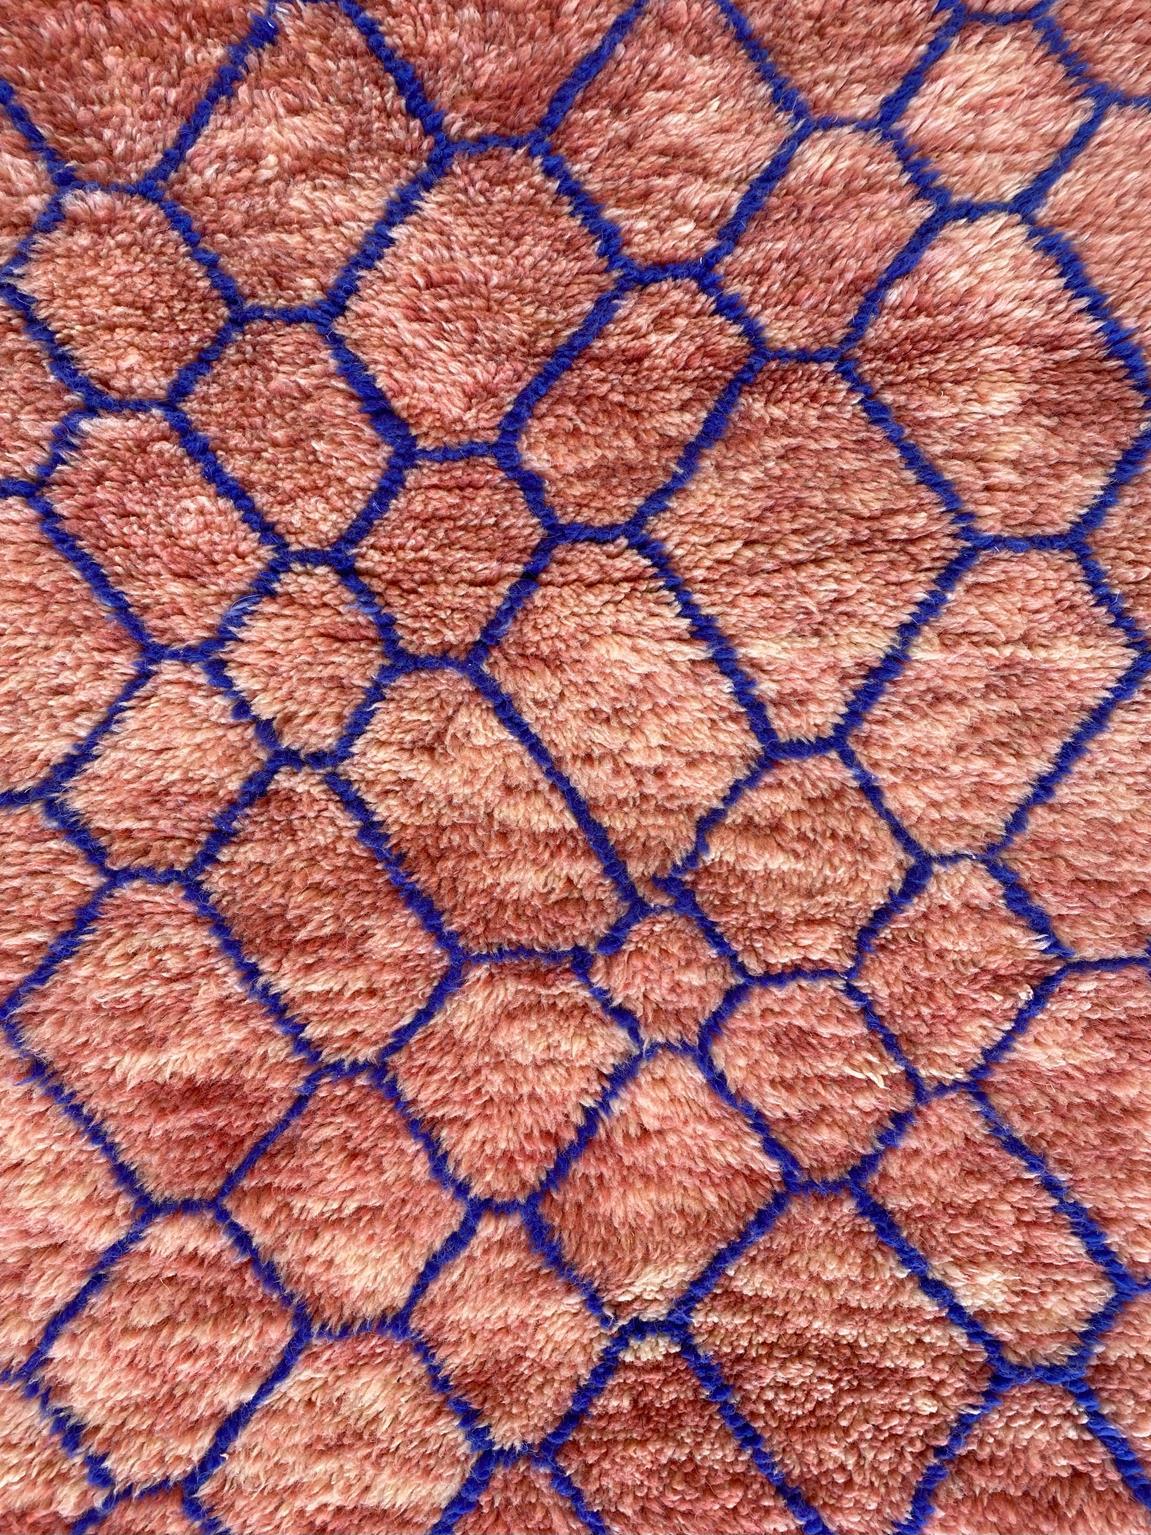 Modern Moroccan wool Mrirt runner rug - Pink/blue - 3.1x13.4feet / 95x408cm For Sale 5